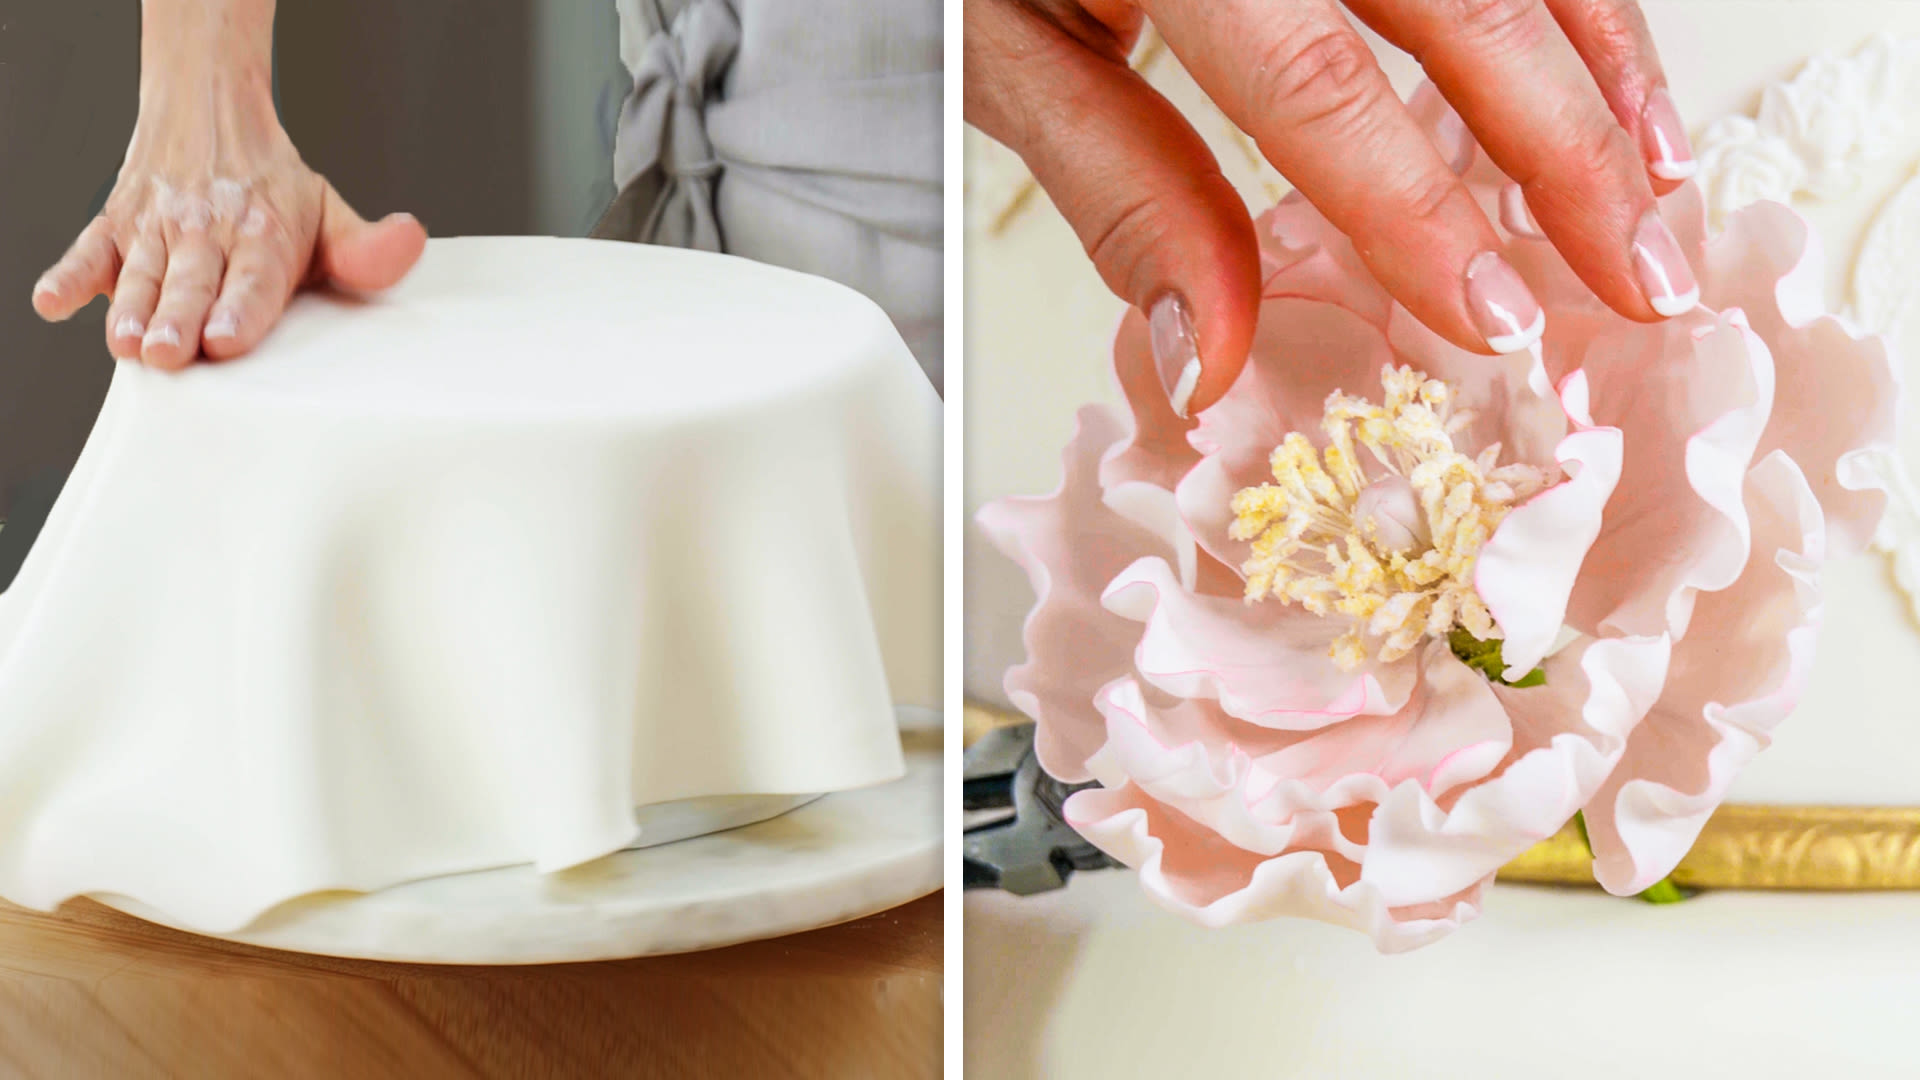 How to Make a Rose Petal Ruffle Cake